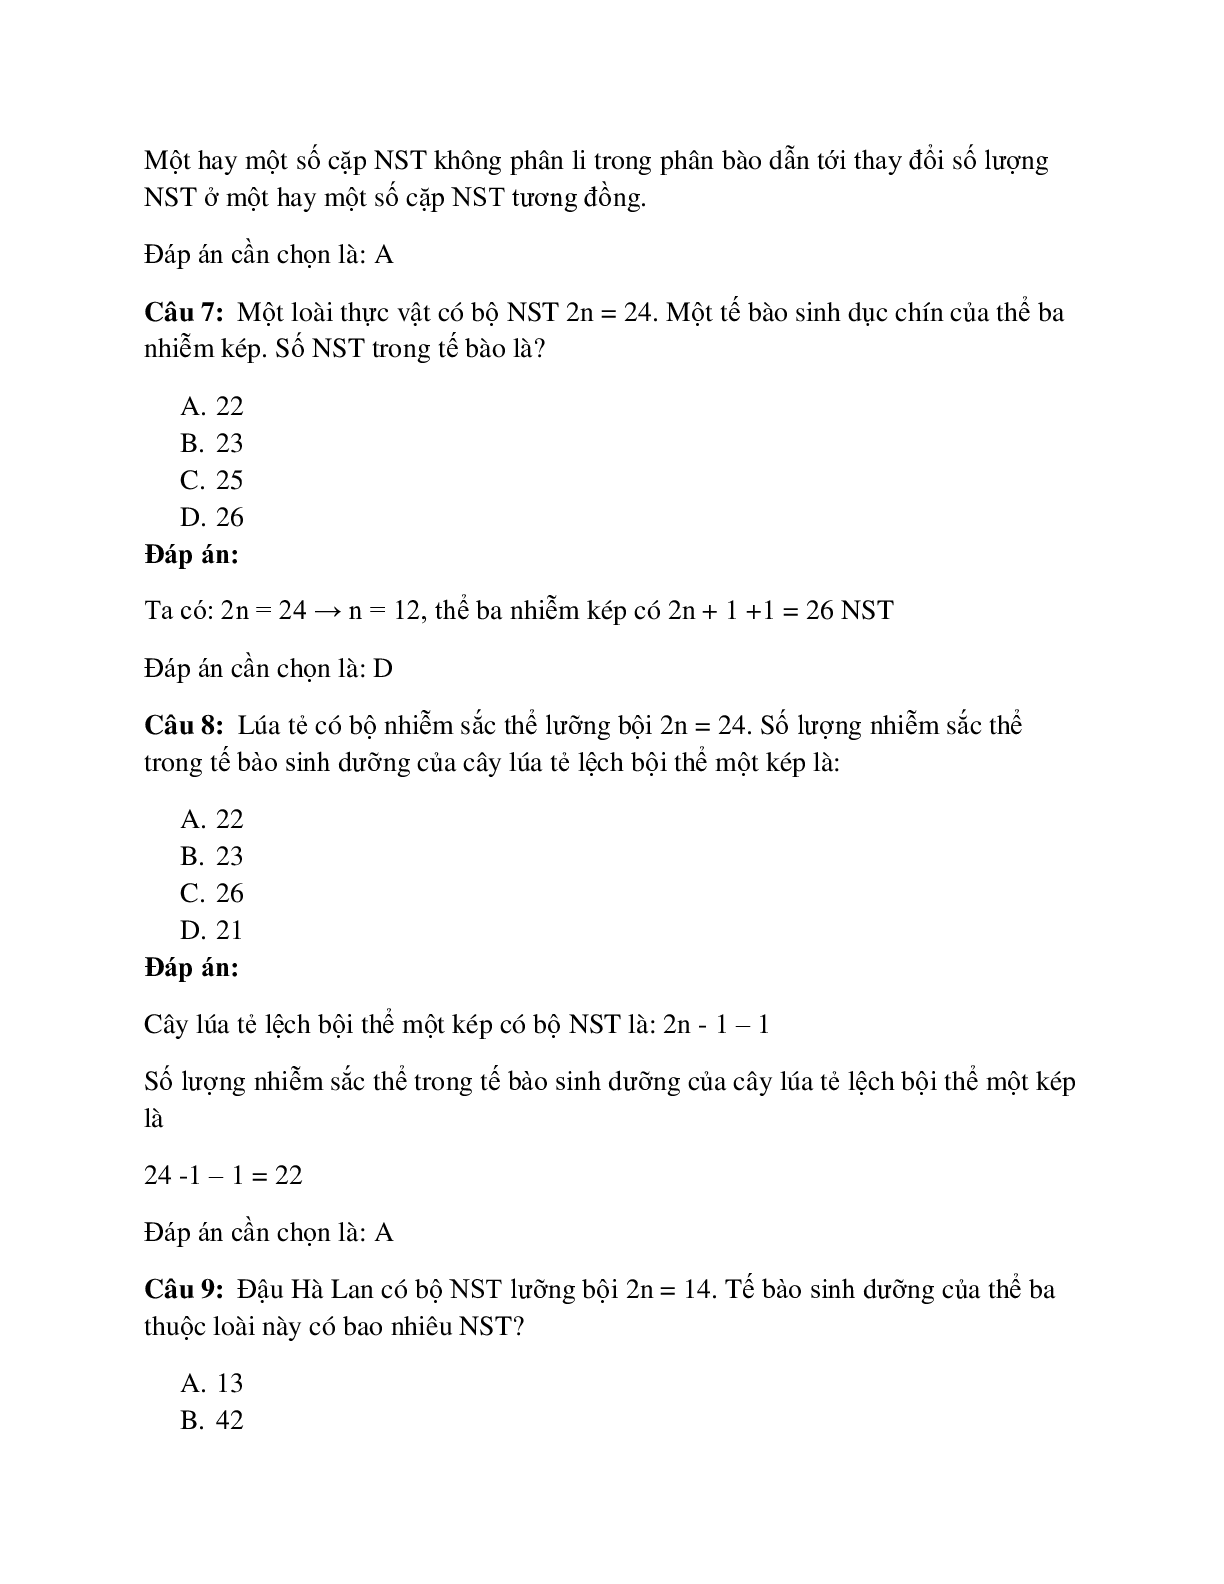 59 câu Trắc nghiệm Sinh học lớp 12 Bài 6 có đáp án 2023: Đột biến số lượng NST (trang 3)